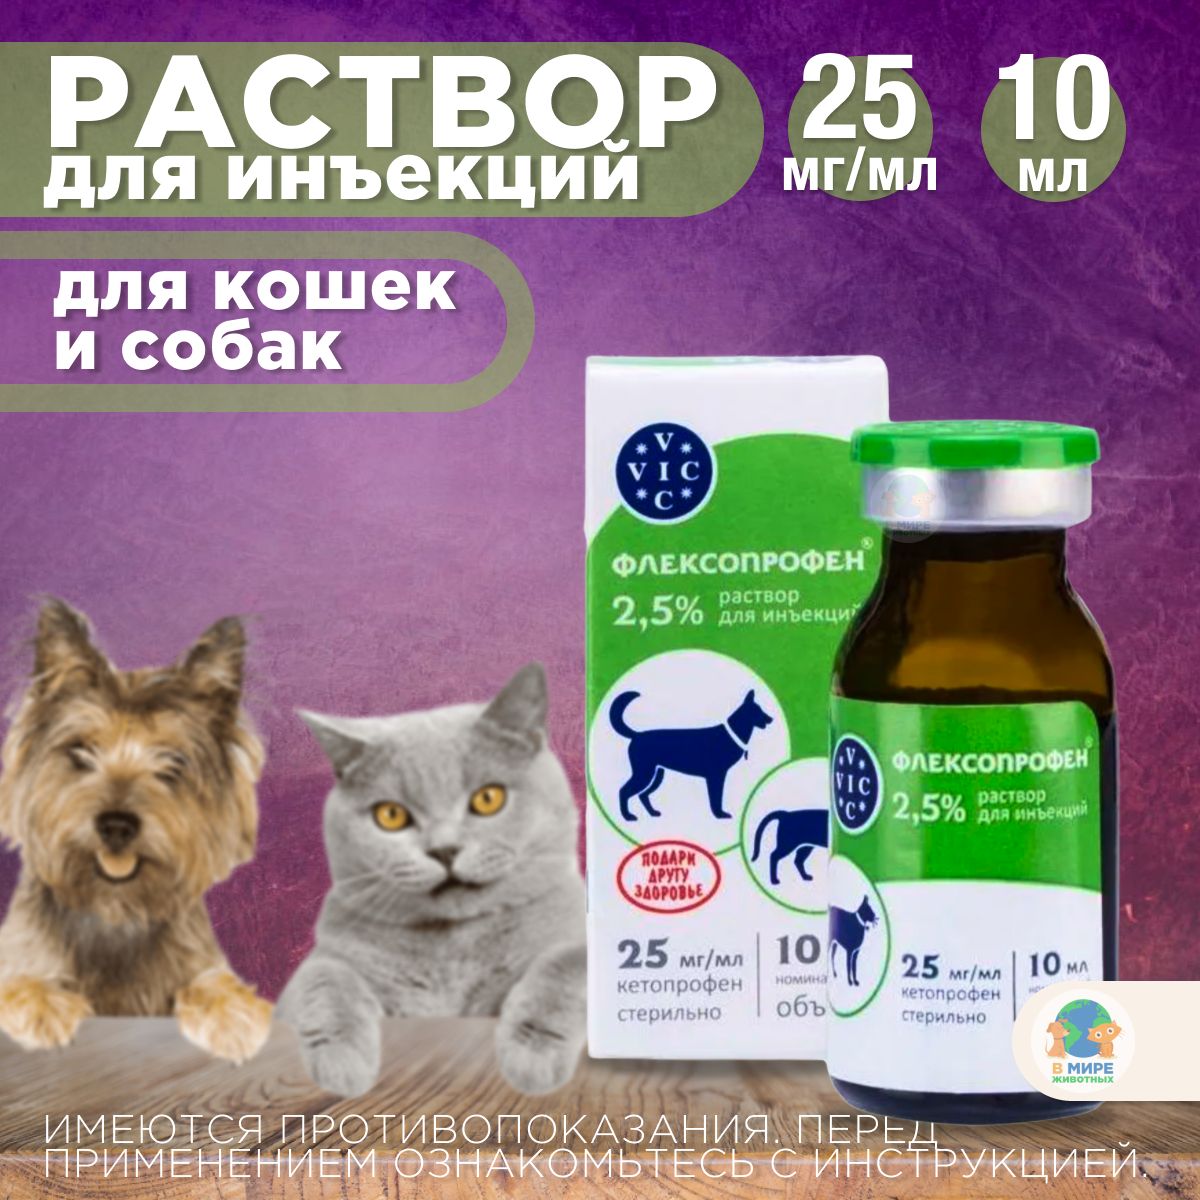 Флексопрофен инструкция цена. Флексопрофен для кошек. Флексопрофен 0,4 мл. Парацетамол для инъекций. Парацетамол в ампулах для инъекций купить.